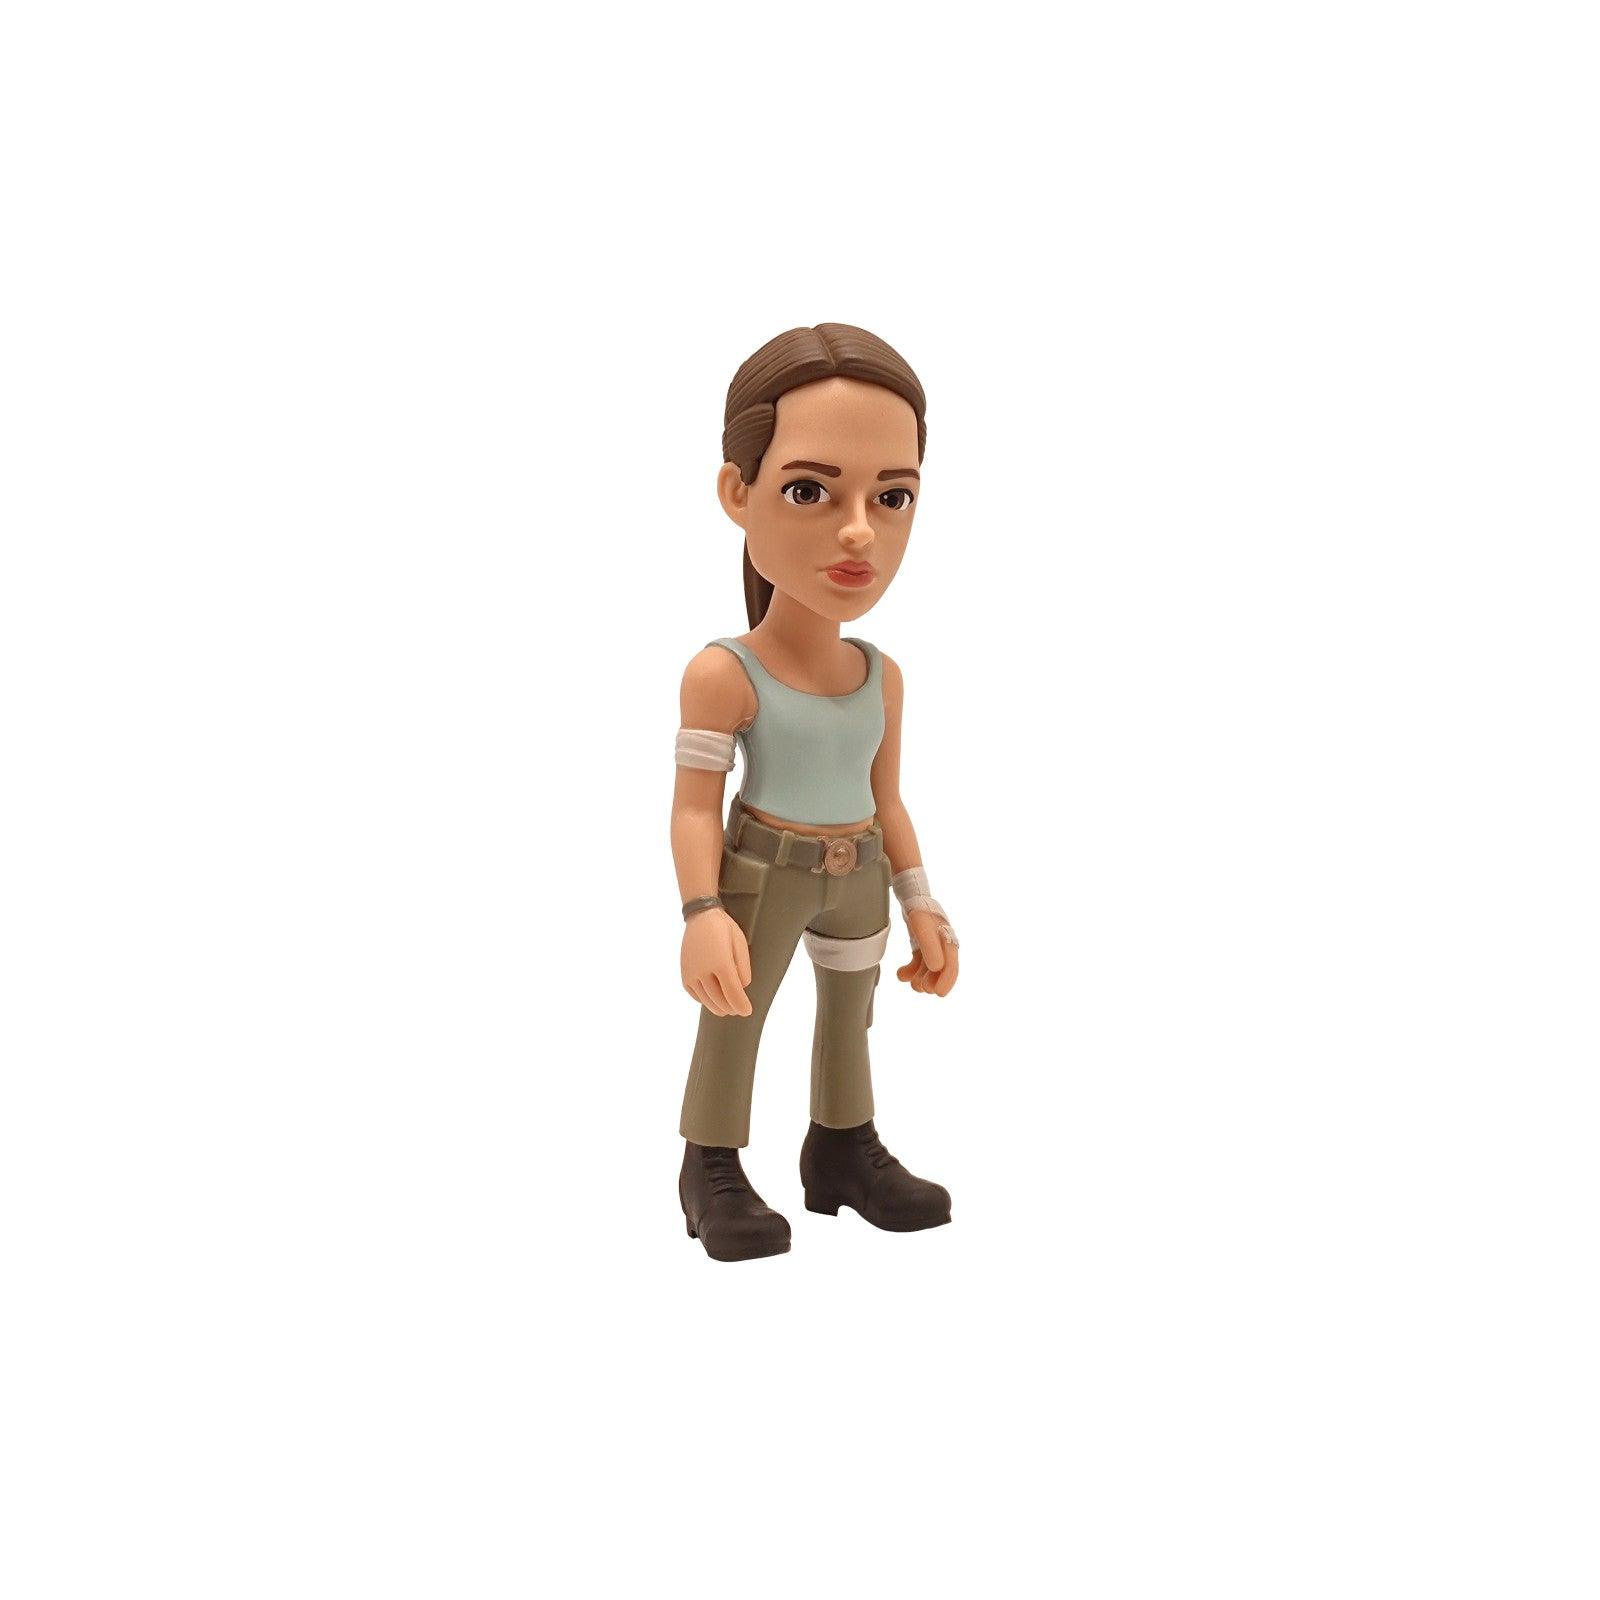 VR-105937 MINIX Tomb Raider Lara Croft - MINIX - Titan Pop Culture